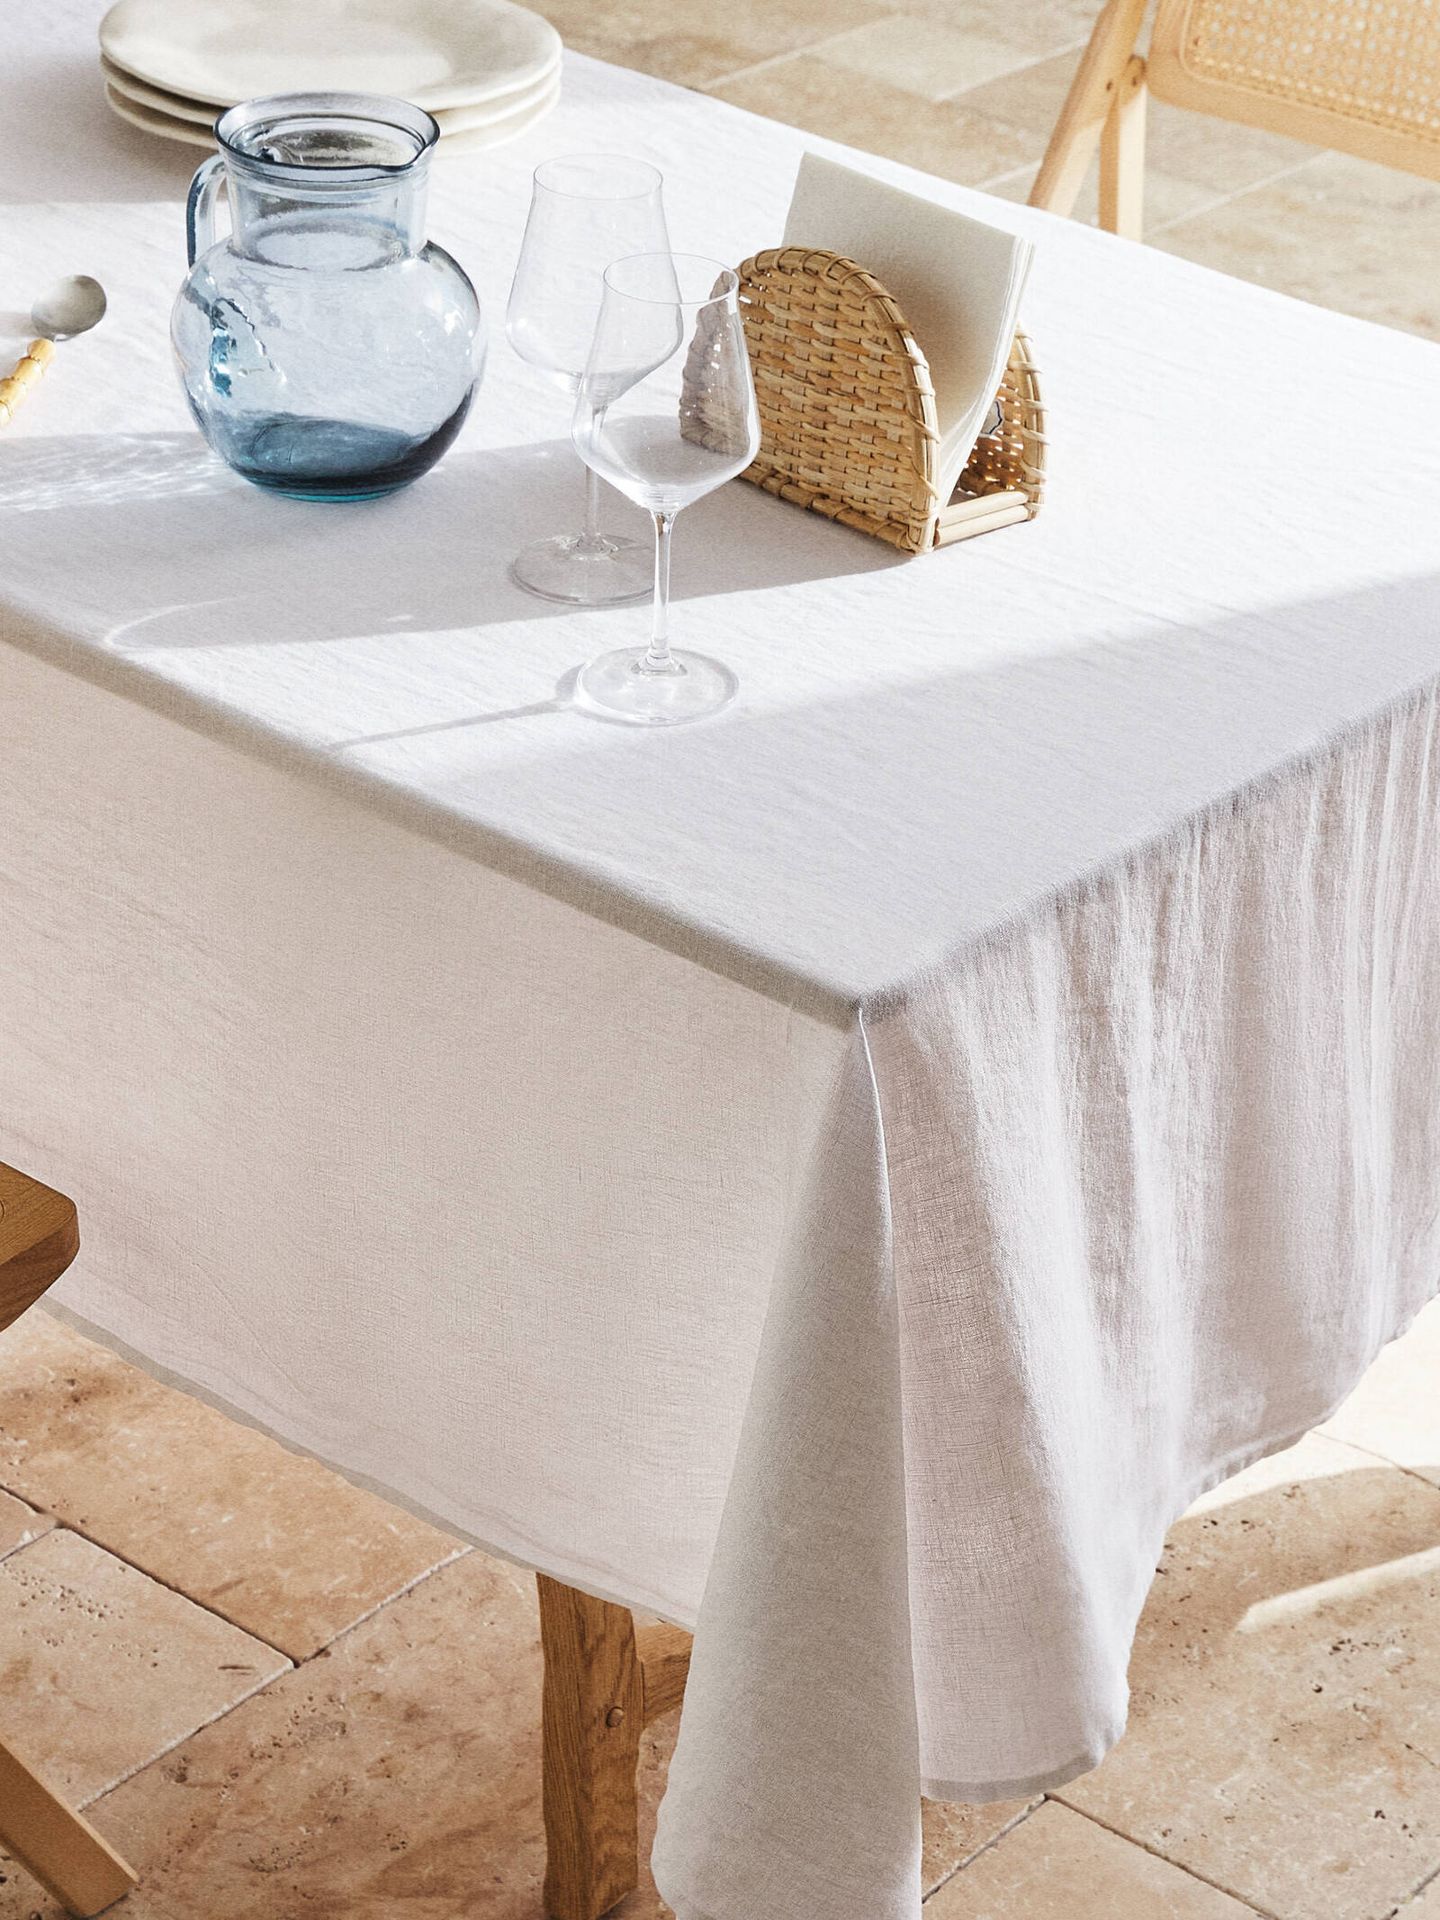 Decora tu mesa de verano de forma elegante. (Cortesía/Zara Home)